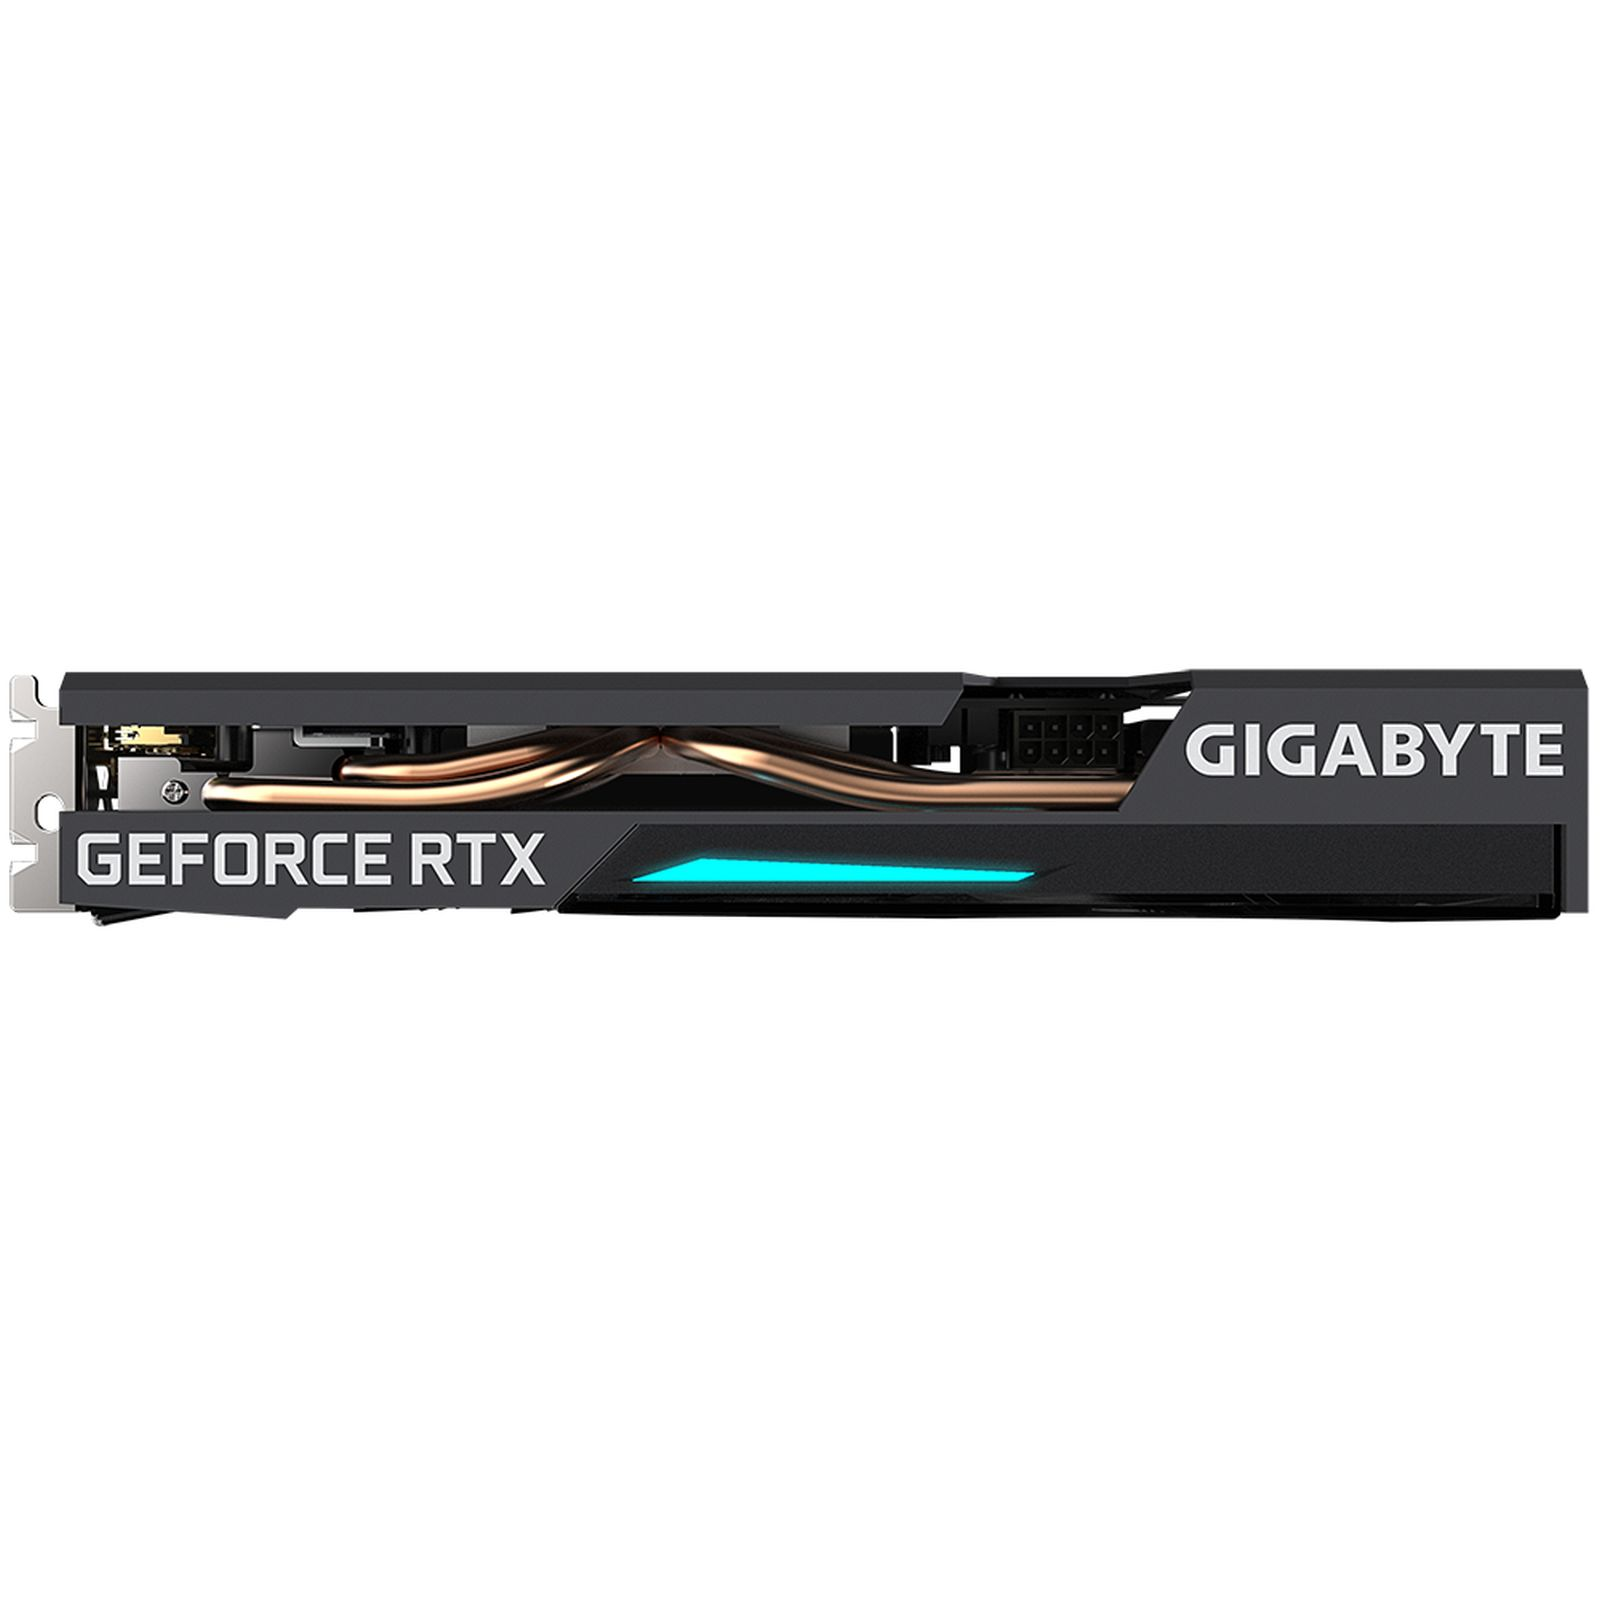 12G 3060 RTX (rev. 2.0) Grafikkarte) EAGLE OC (NVIDIA, GIGABYTE GeForce